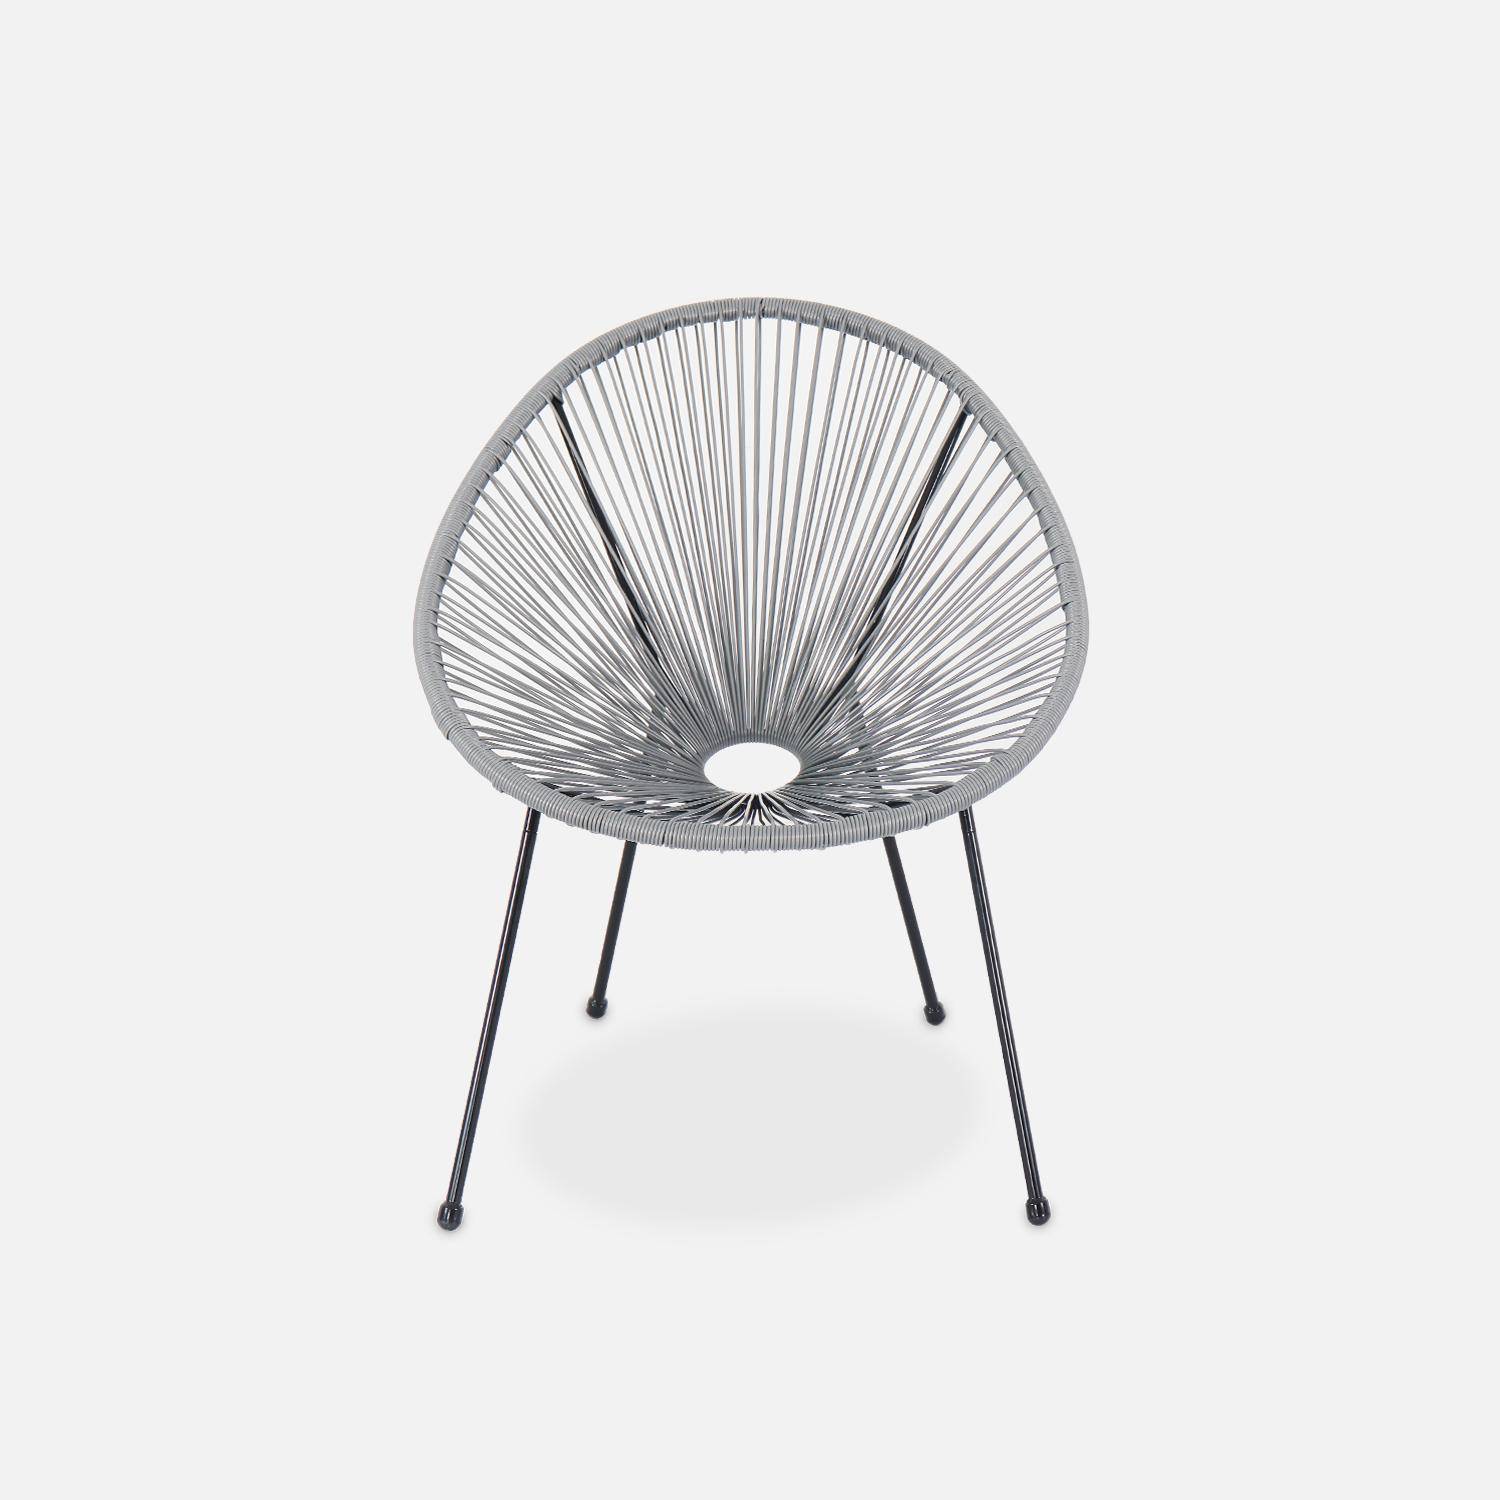 ACAPULCO stoel ei-vormig -Donkergrijs- Stoel 4 poten retro design, plastic koorden, binnen/buiten Photo3